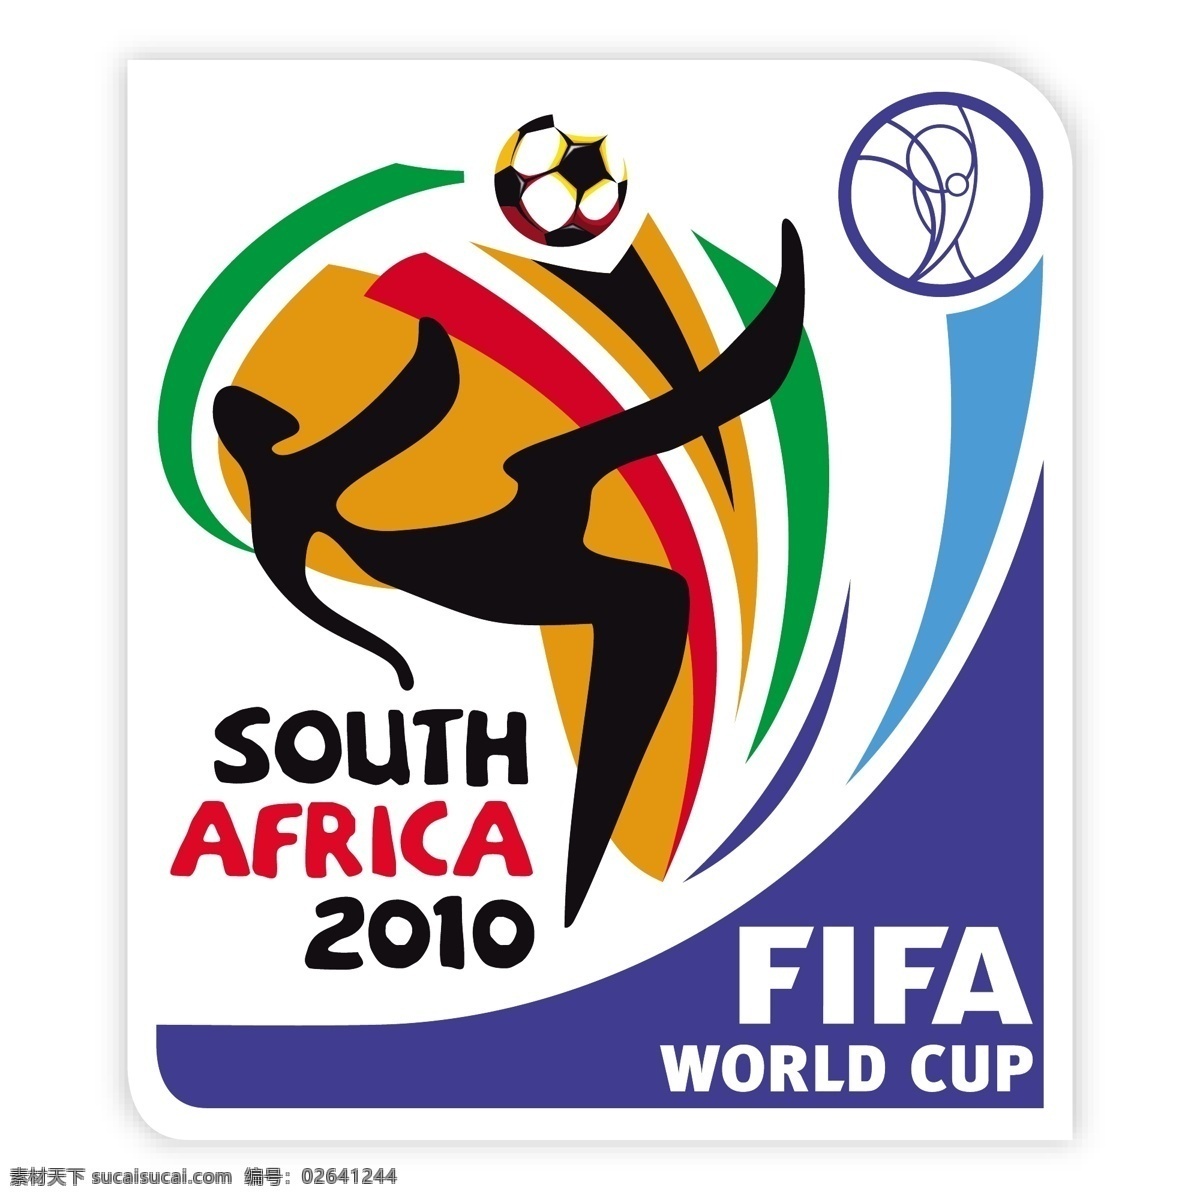 2010 南非 世界杯 矢量 标志 logo 模板 矢量图 其他矢量图